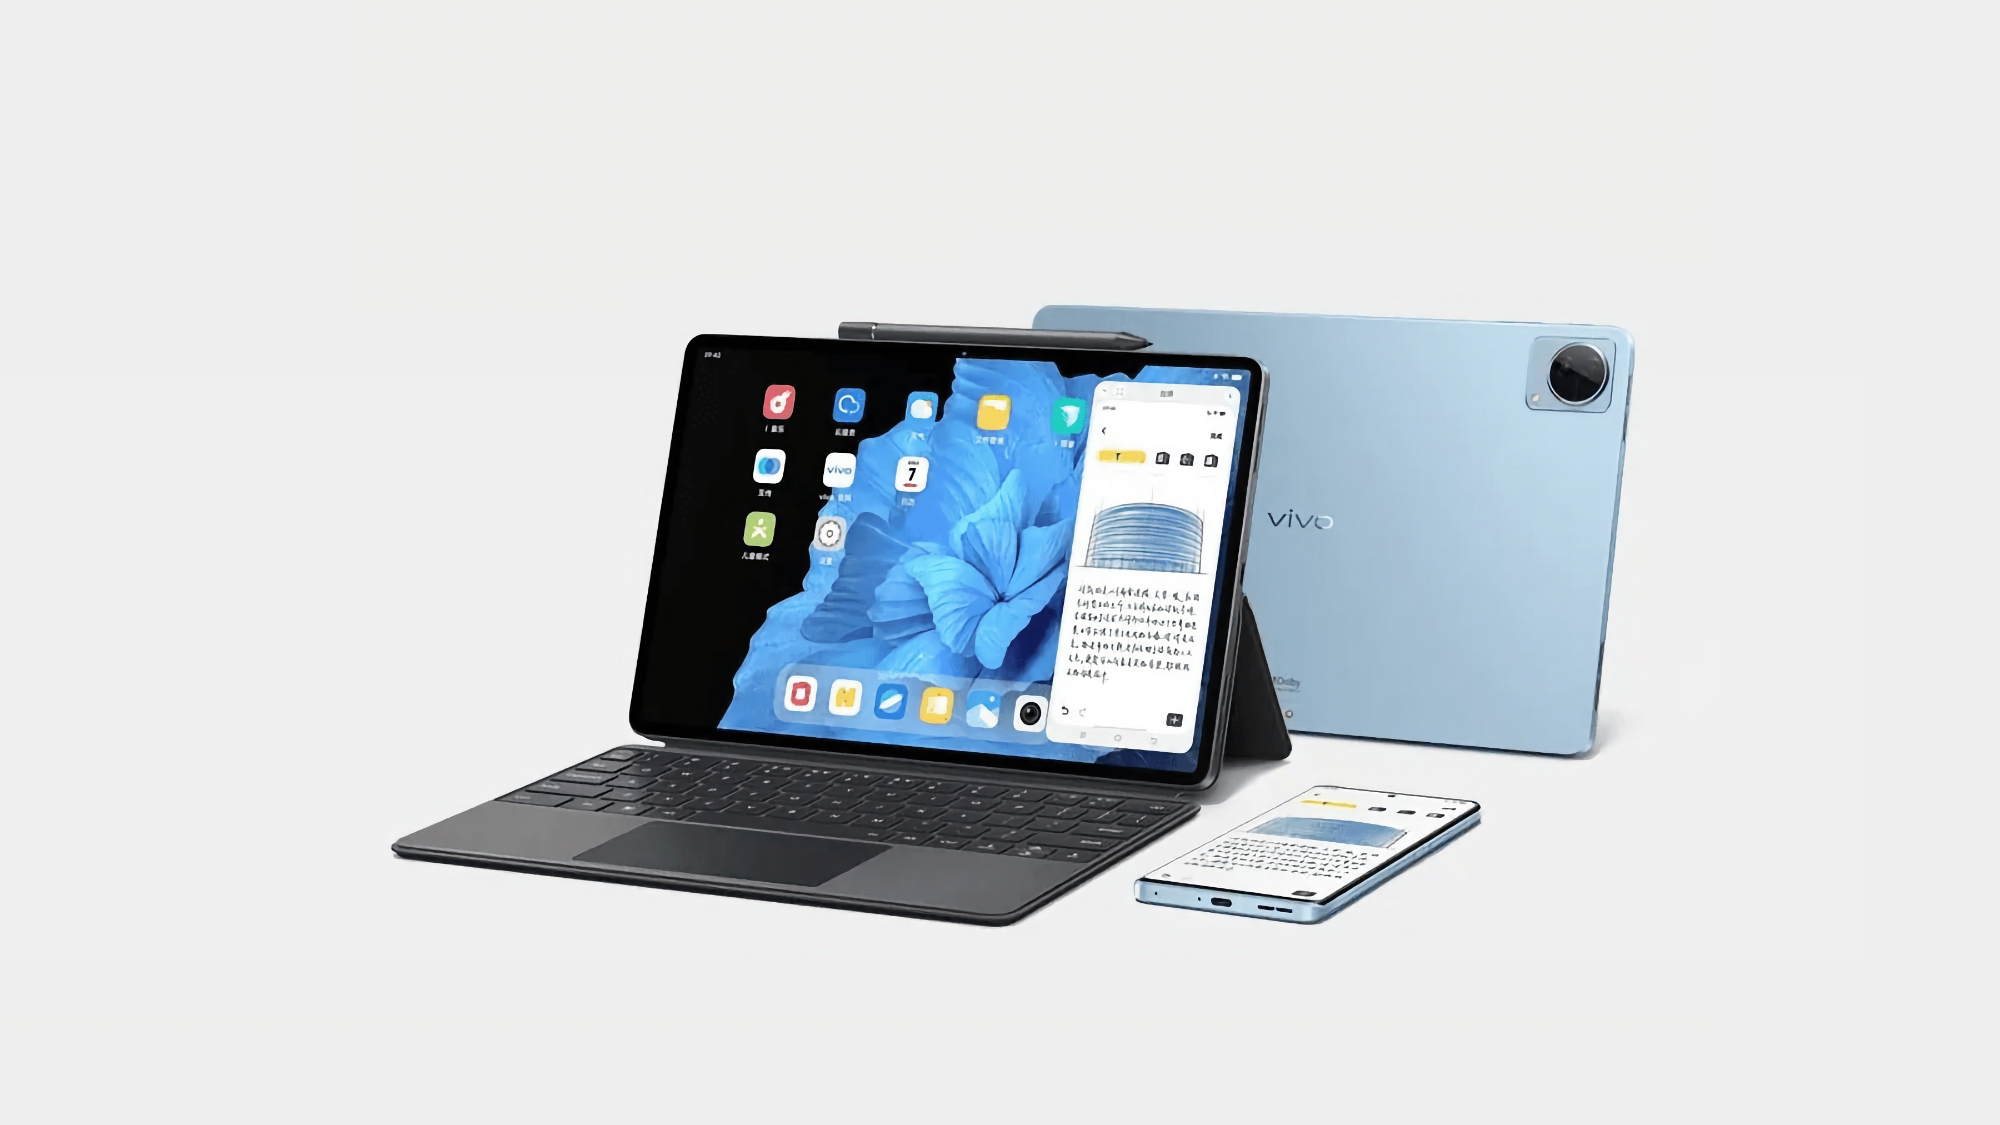 Bis zu 512 GB Speicherplatz und 44 W Ladeleistung: Insider verrät neue Details über das vivo Pad 2 Tablet